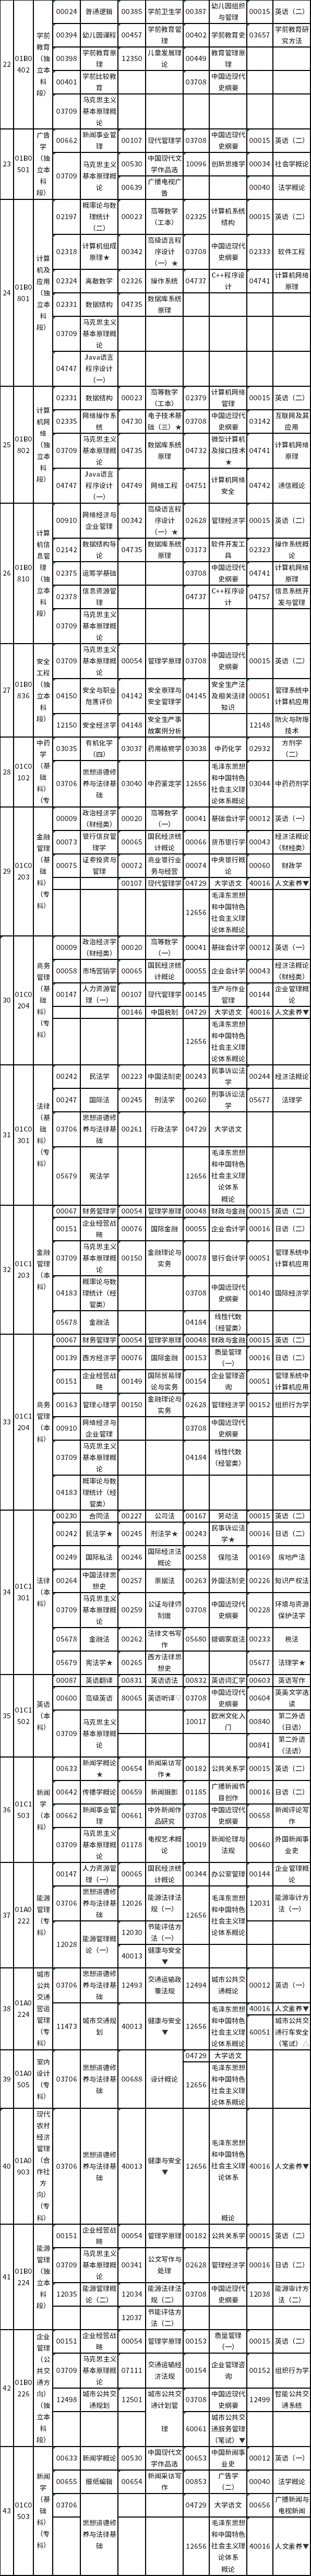 北京市高等教育自学考试2022年10月笔试课程考试时间表